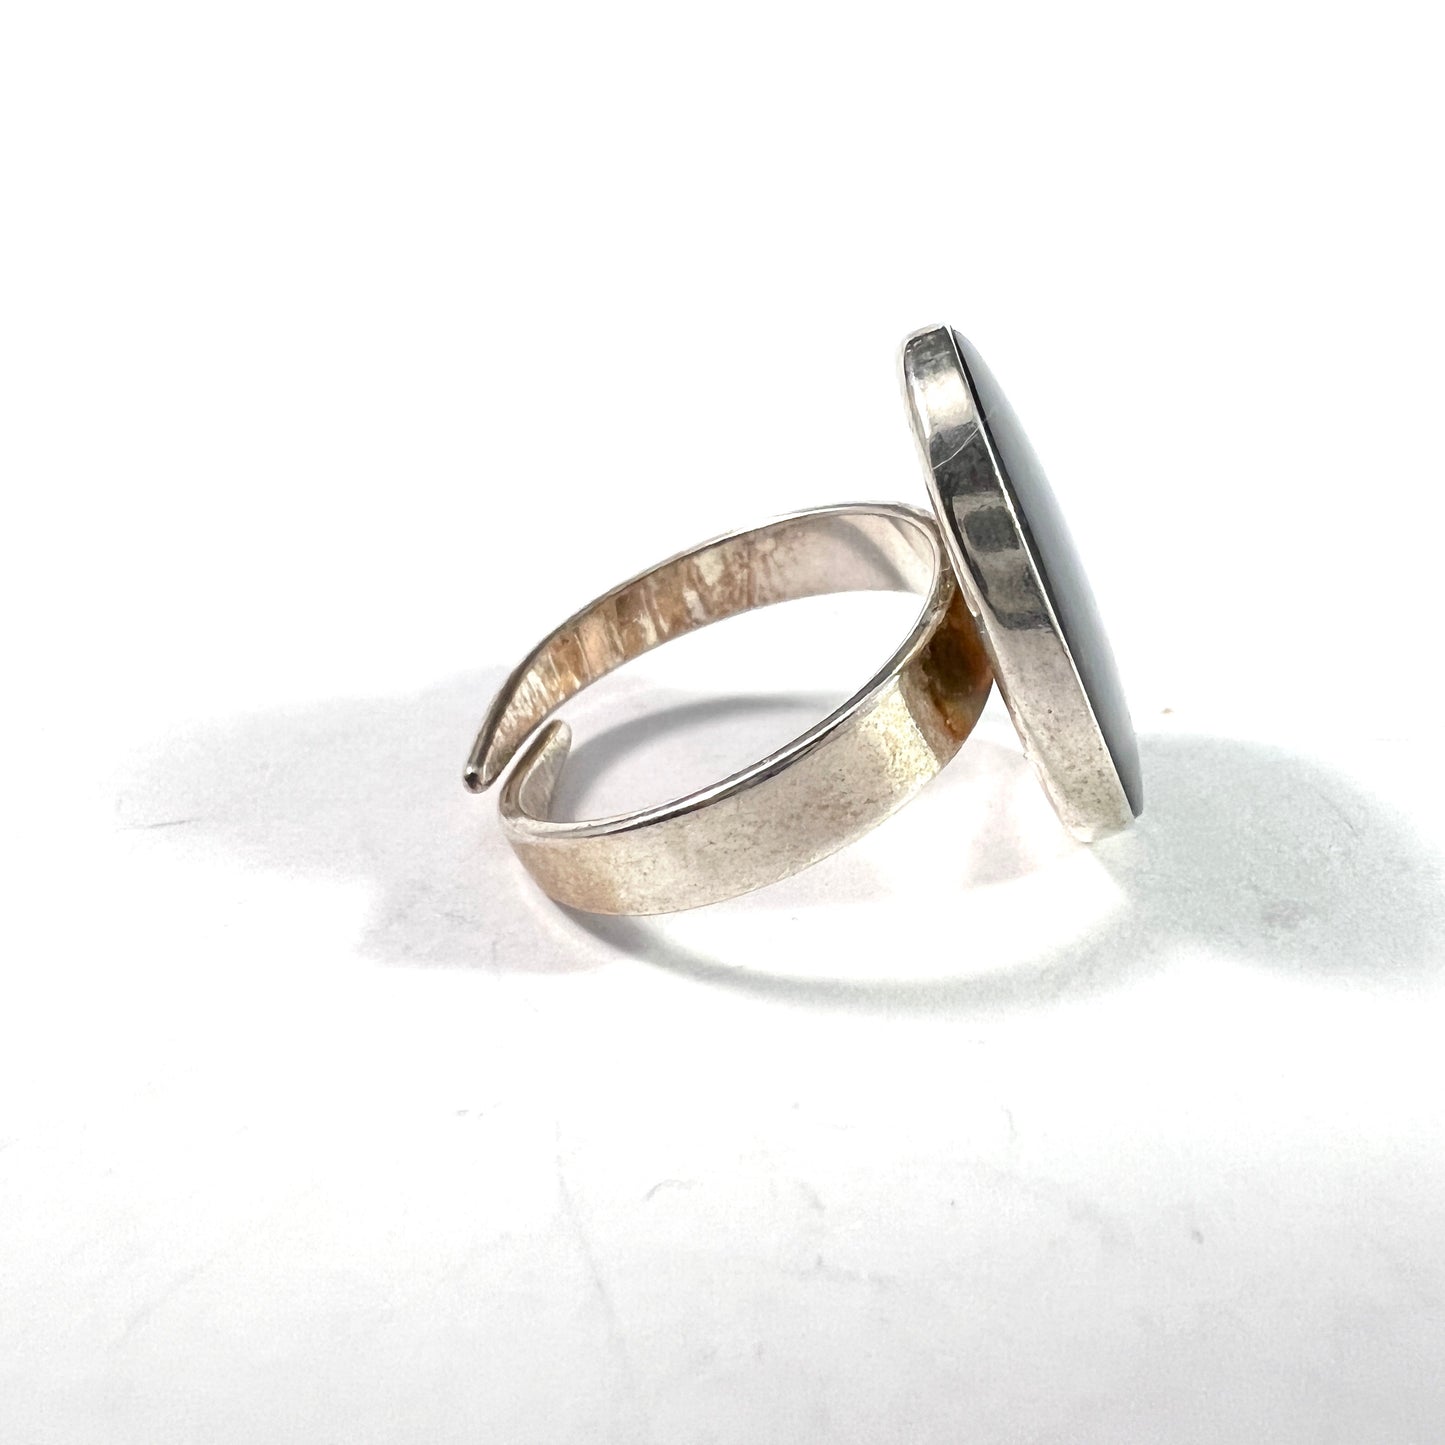 Maker KGK, Finland. Vintage Sterling Silver Spectrolite Ring.